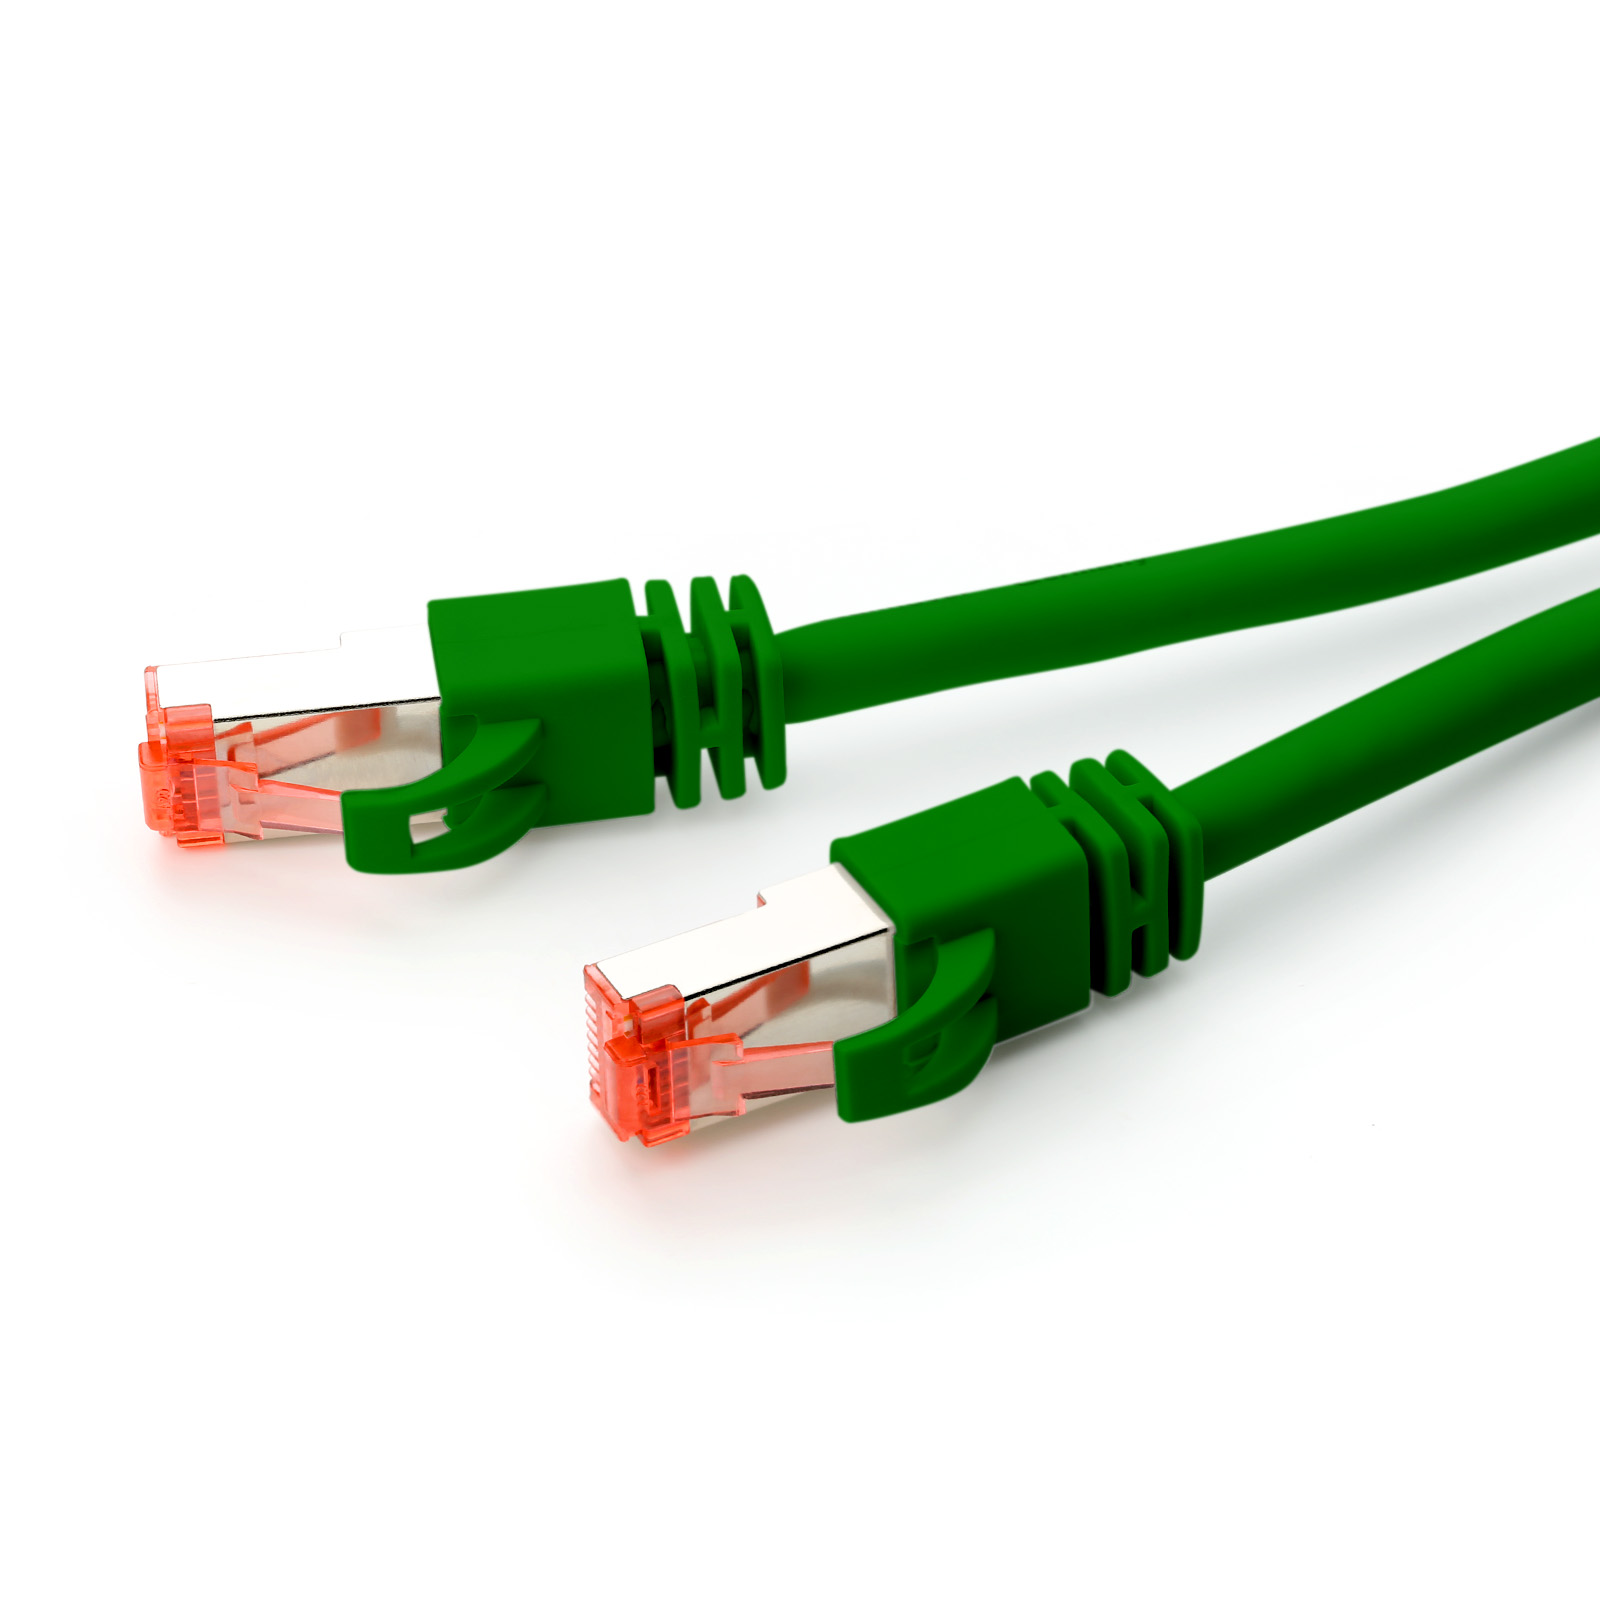 CSL 0,5m Patchkabel, Cat7 Netzwerkkabel, grün